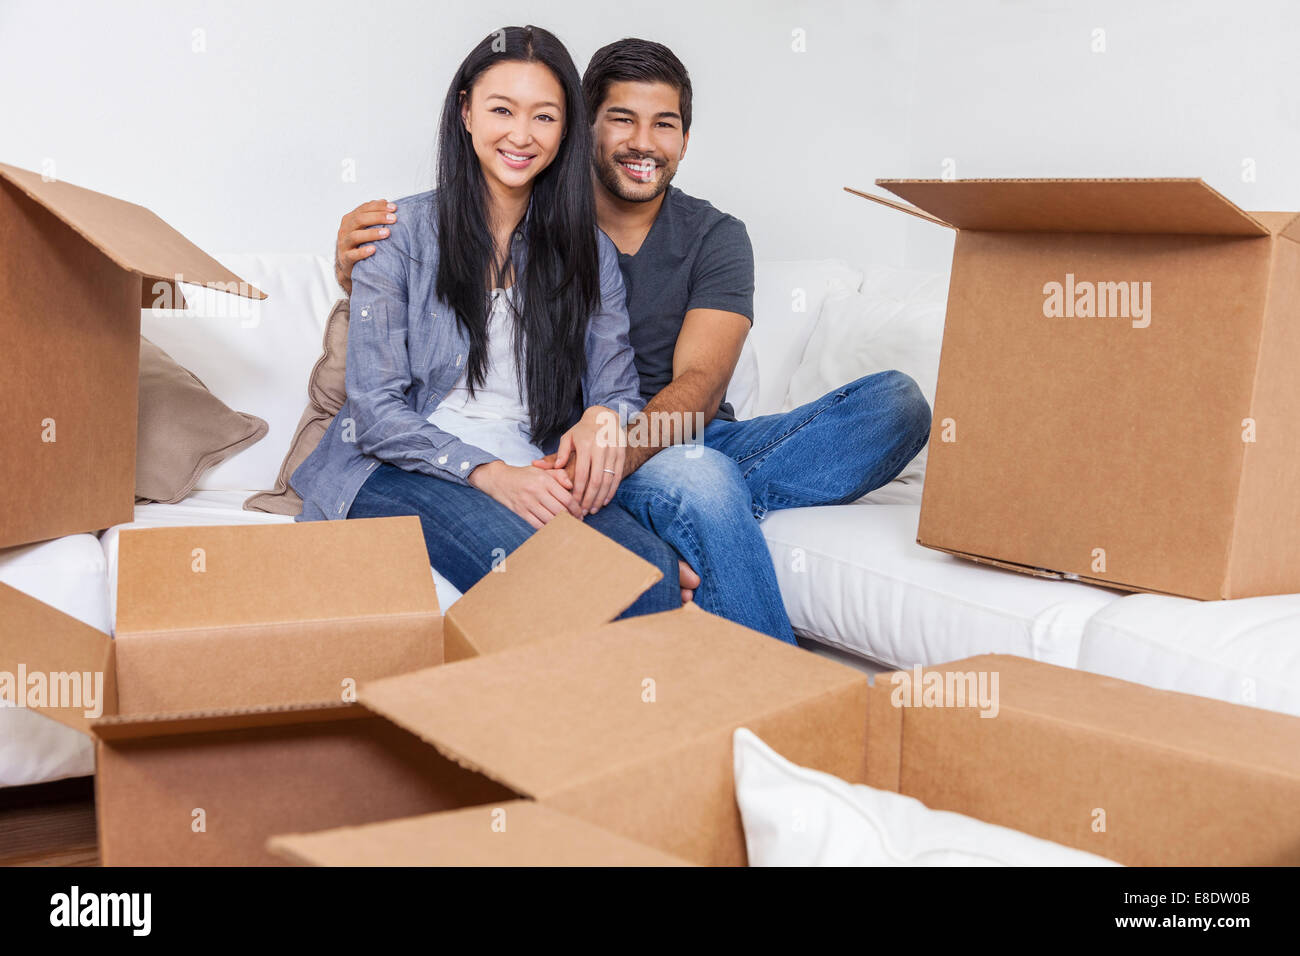 Couple chinois asiatique d'emballage ou de déballage de cartons et déménagement dans une nouvelle maison Banque D'Images